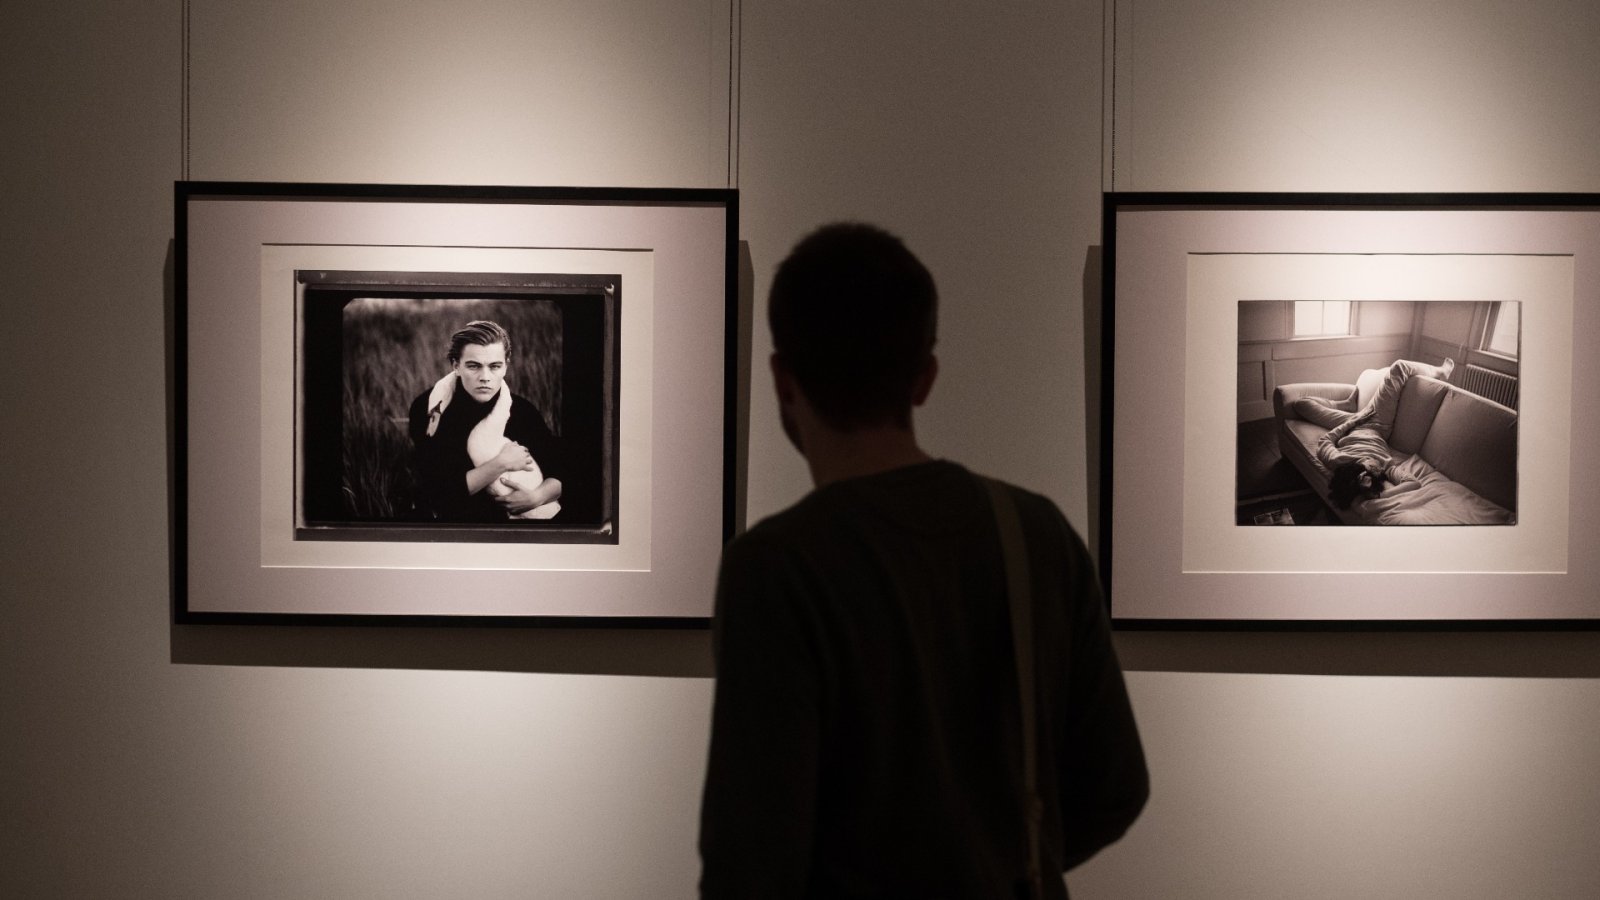 इन मशहूर तस्वीरों के बारे में तो आप जानते ही हैं, लेकिन क्या है इनकी कहानी? एनी लीबोविट्ज़ का सबसे अच्छा काम